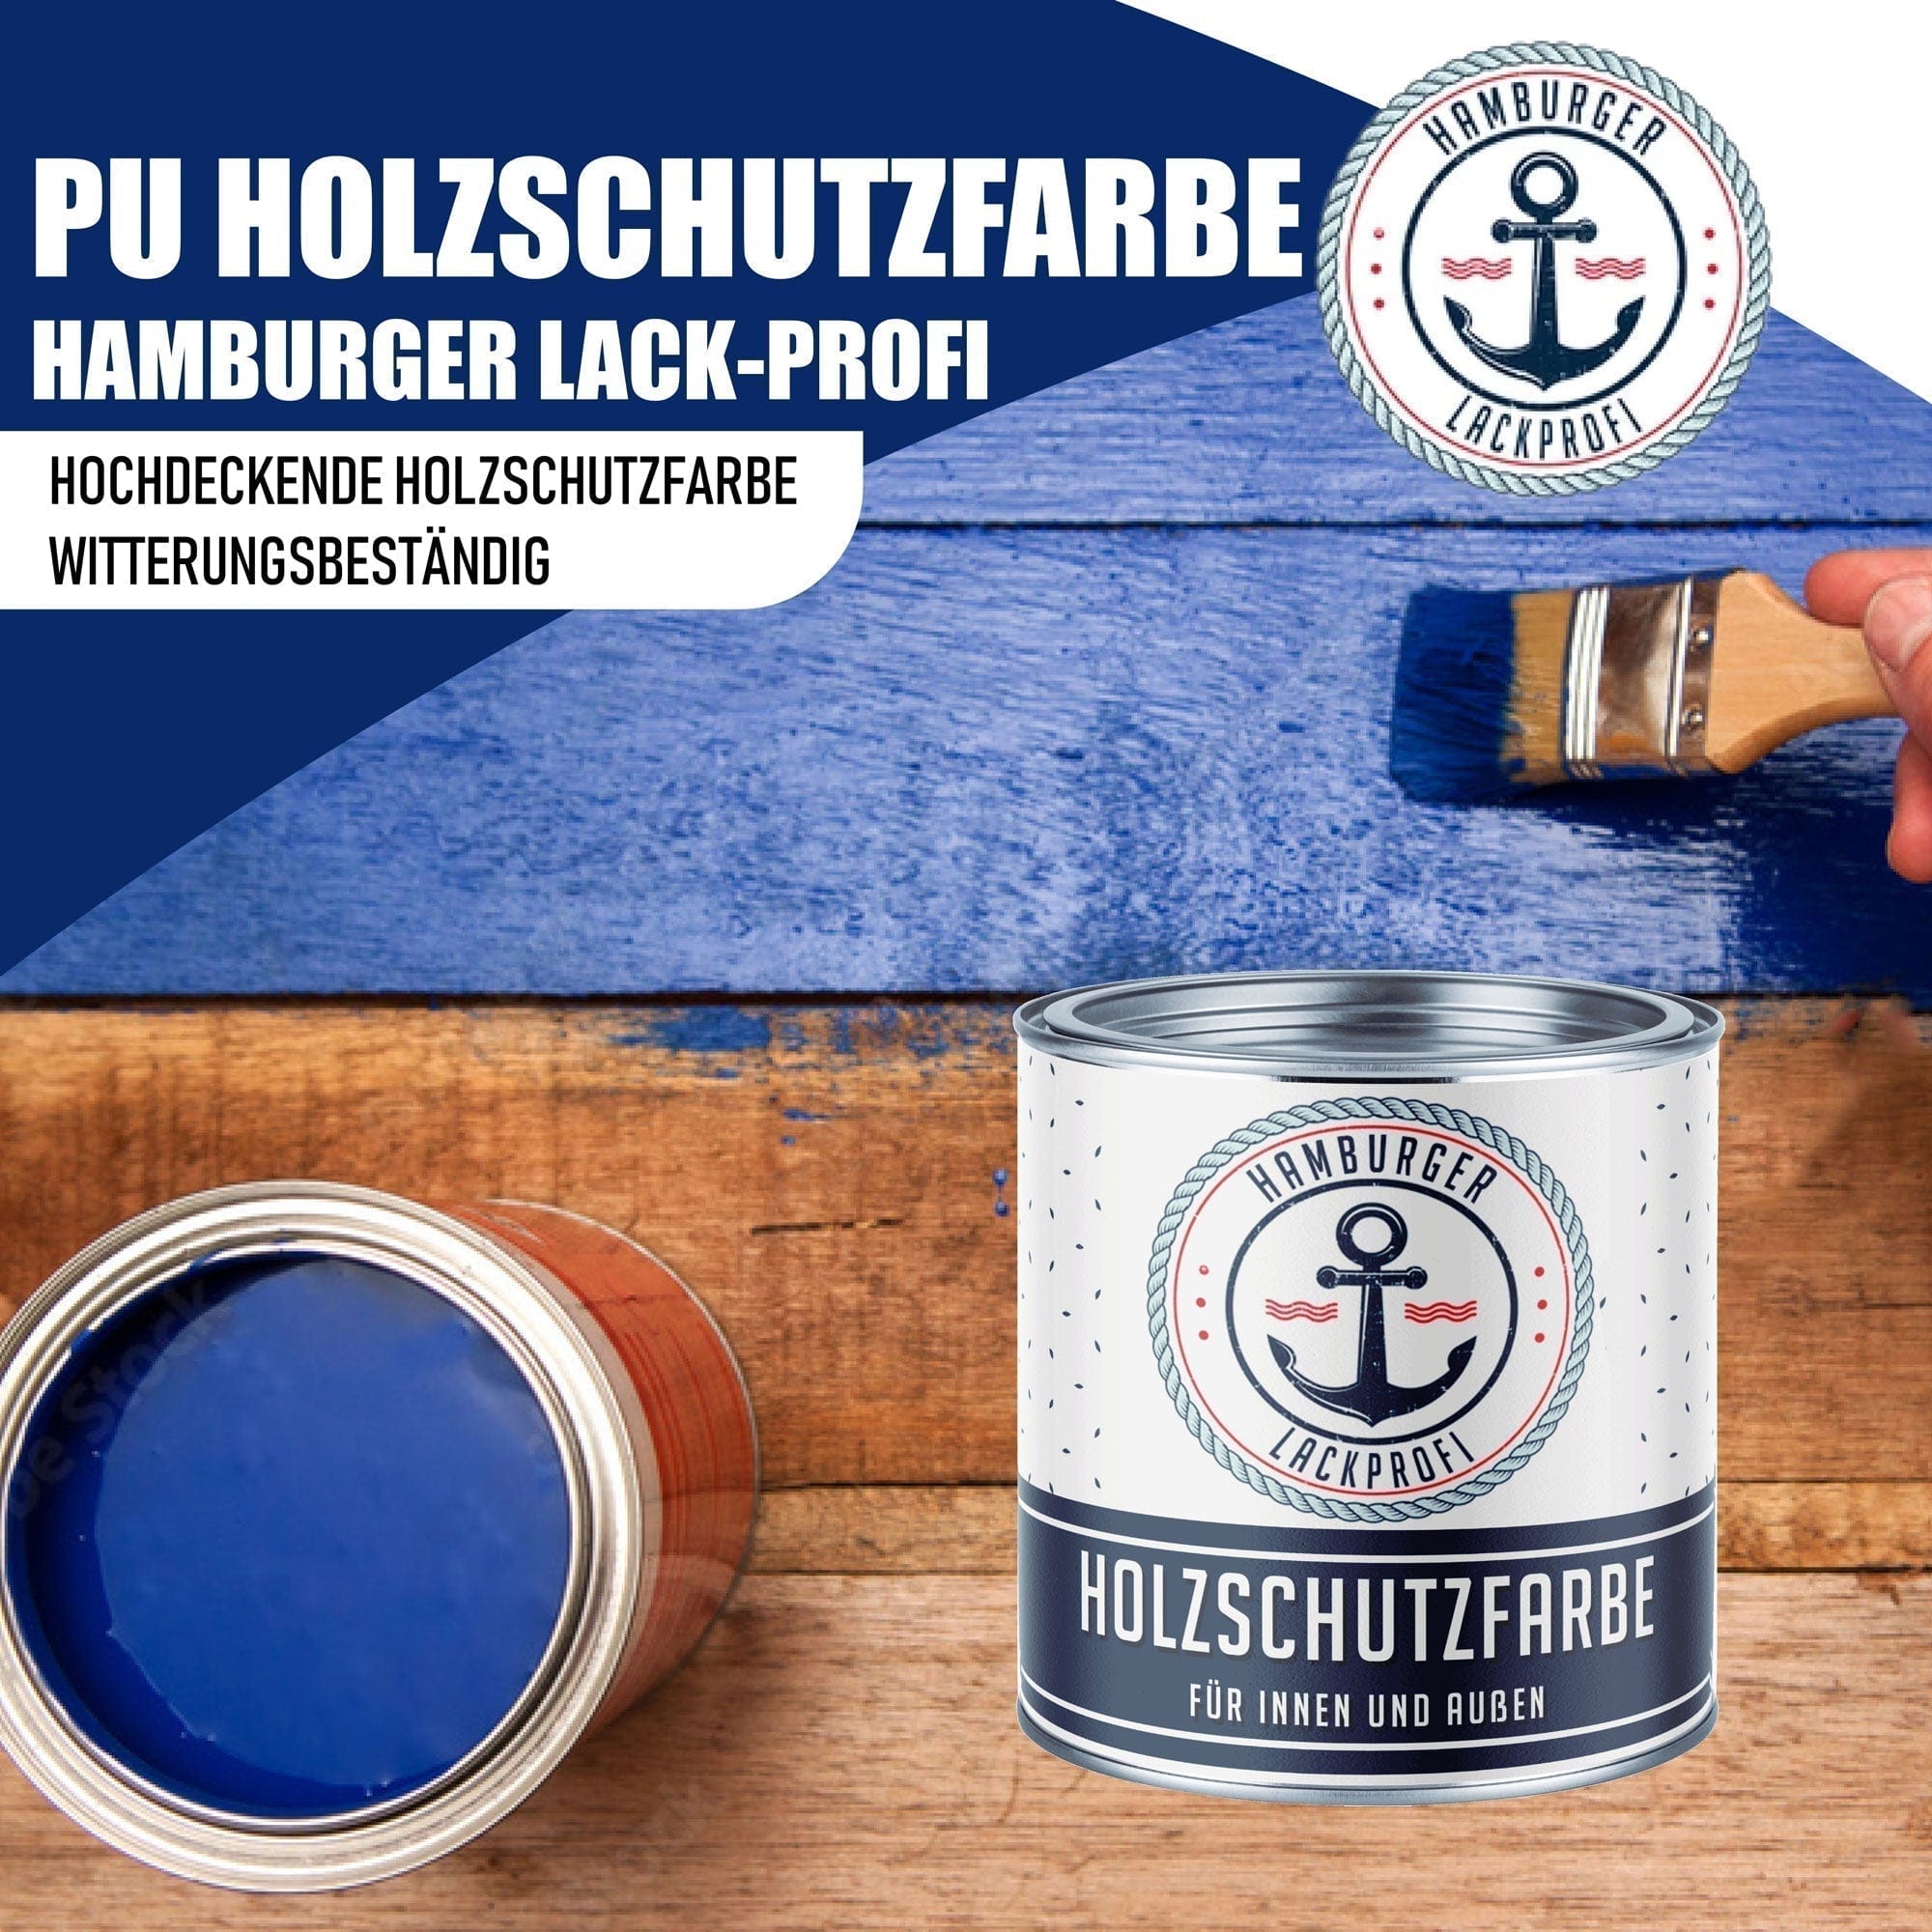 Hamburger Lack-Profi Lacke & Beschichtungen PU Holzschutzfarbe RAL 8014 Sepiabraun - Wetterschutzfarbe